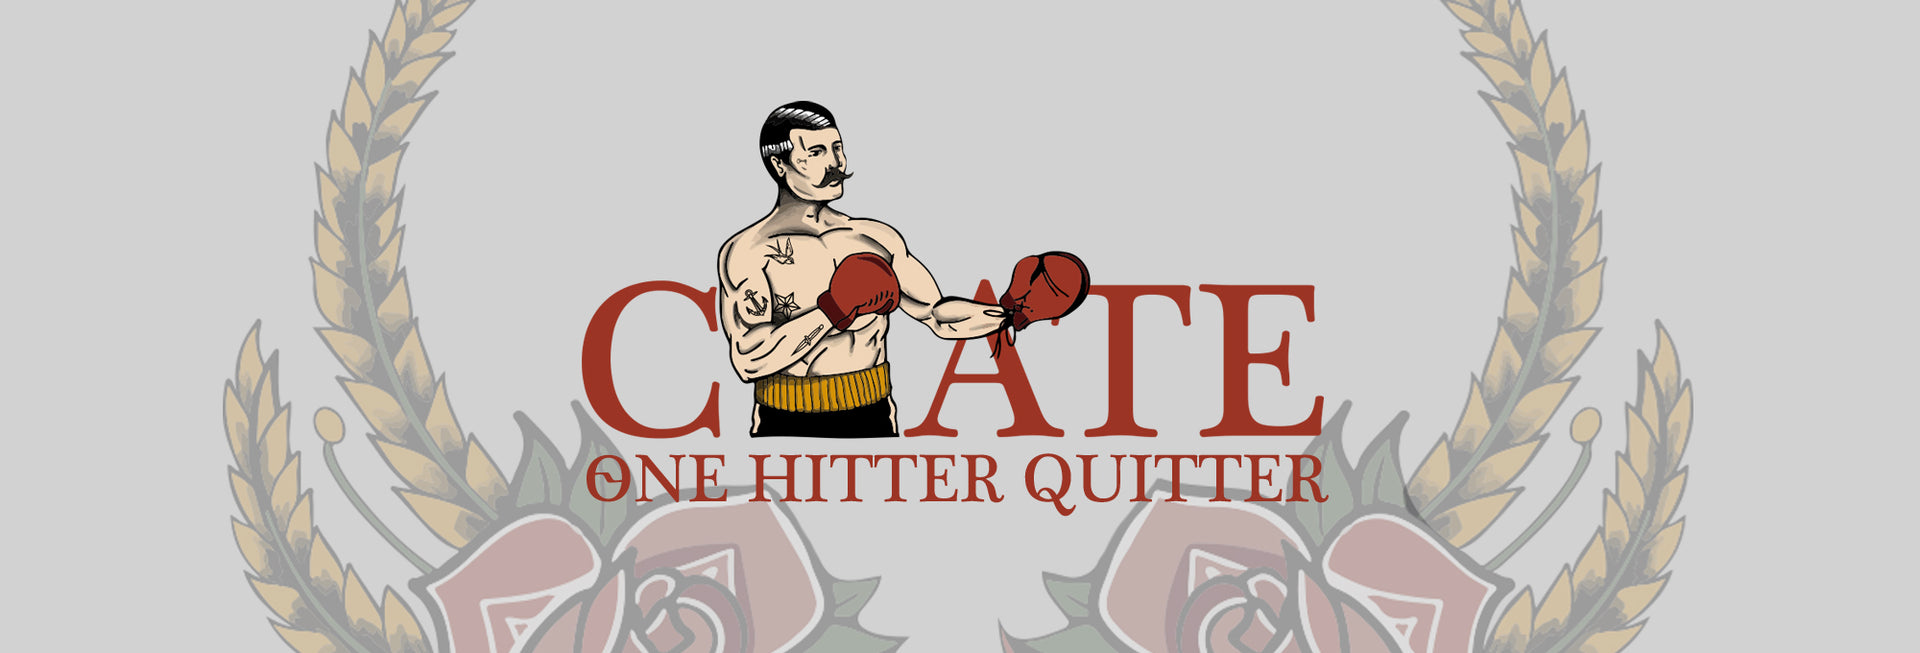 One Hitter Quitter